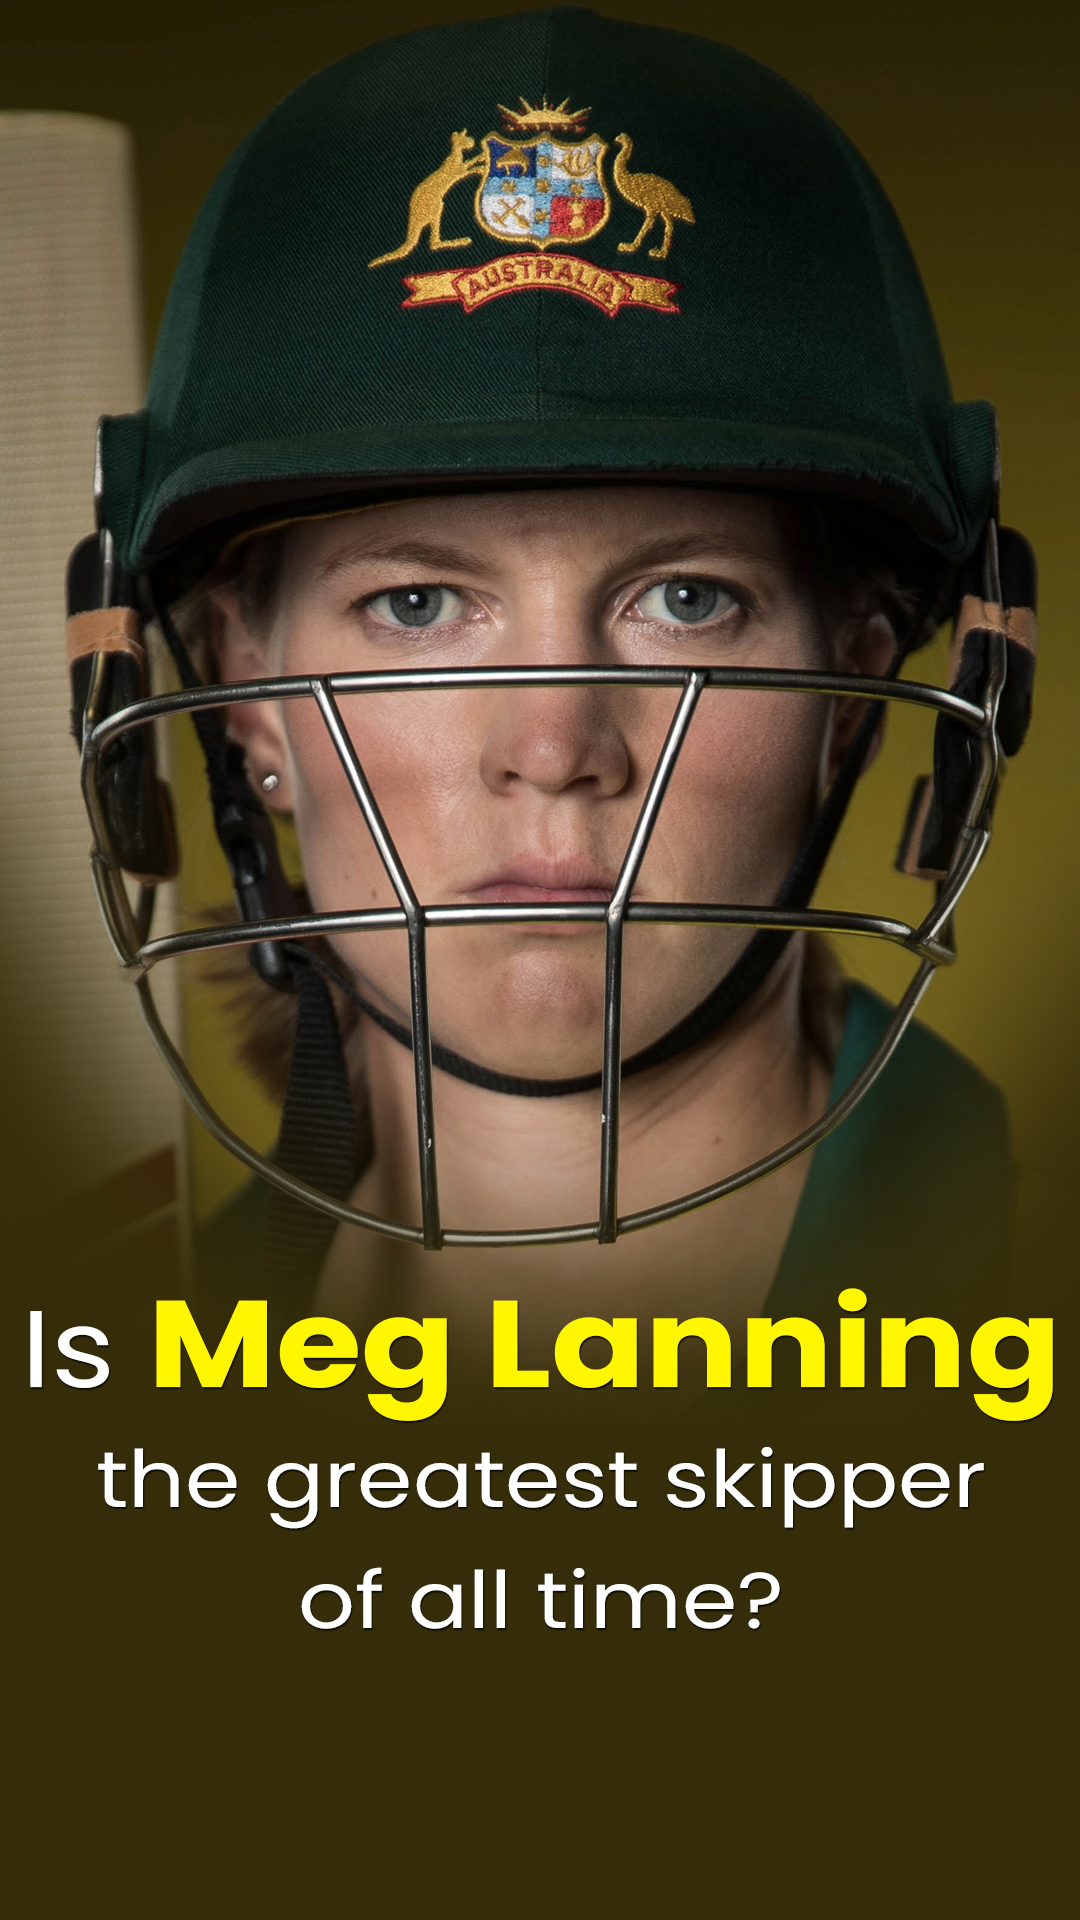 Australian skipper Meg Lanning now has 5 world titles to her name